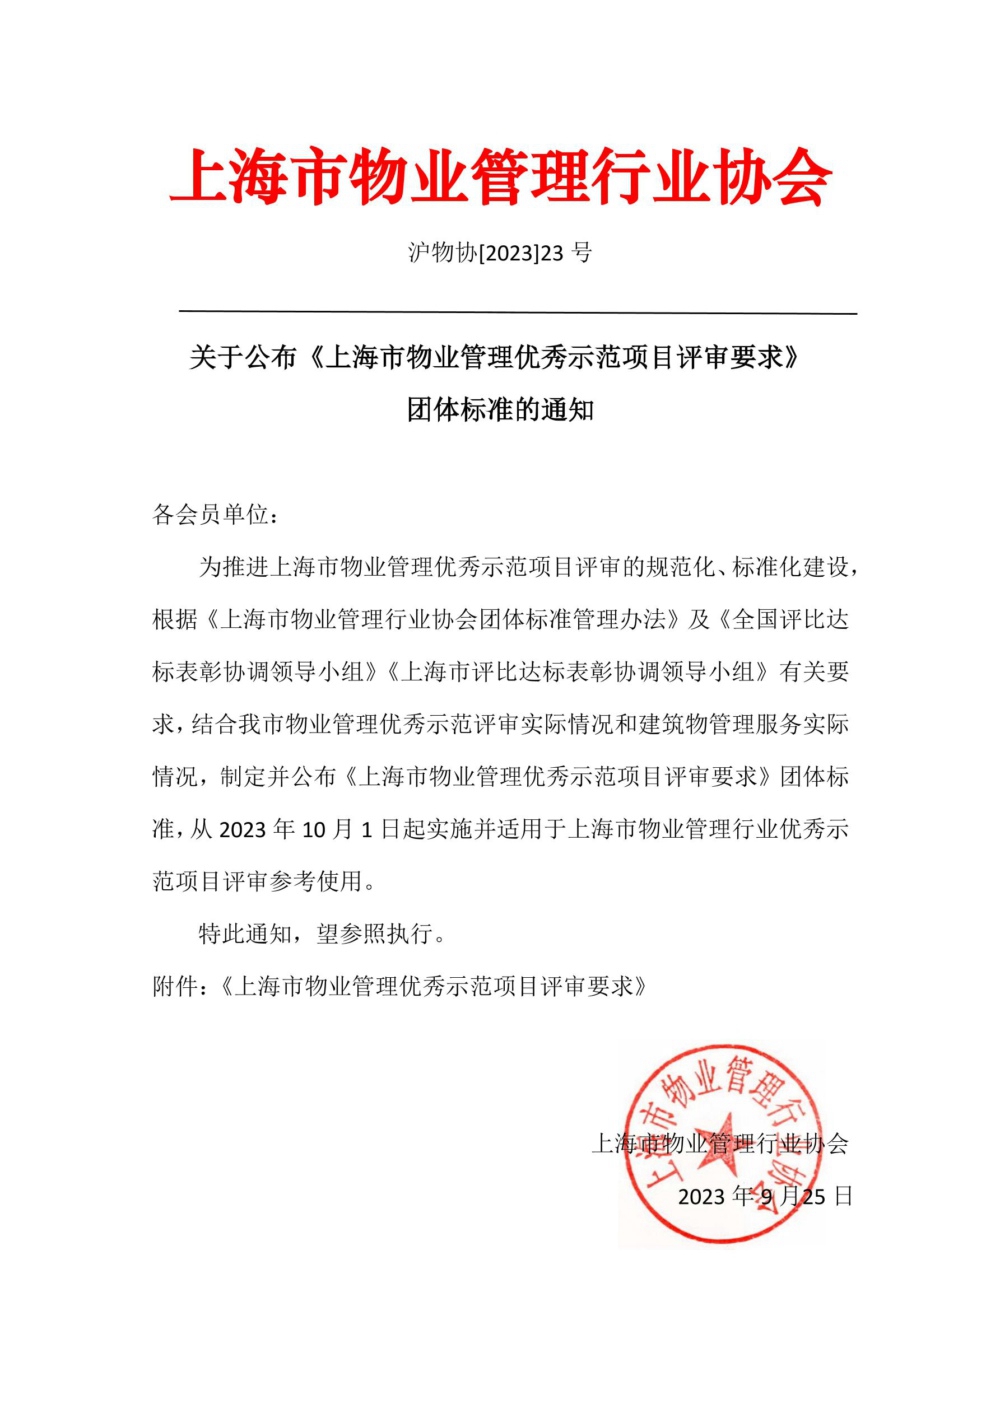 上海市物业管理优秀示范项目评审要求.jpg